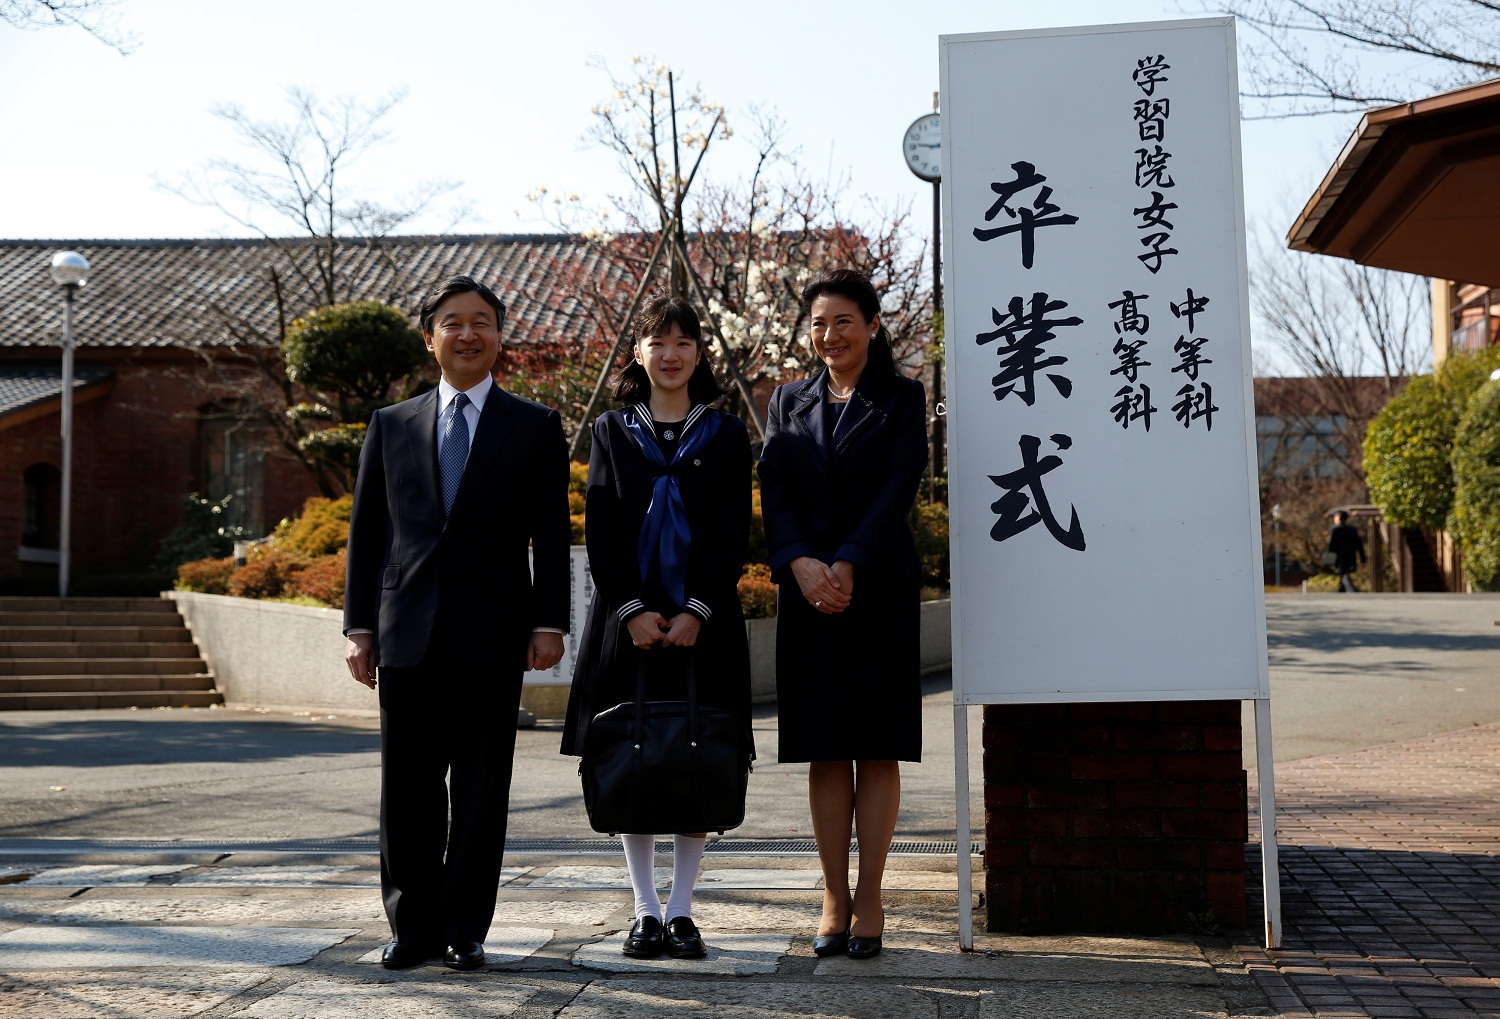 La princesa Aiko de Japón se gradúa de la secundaria tras problemas escolares